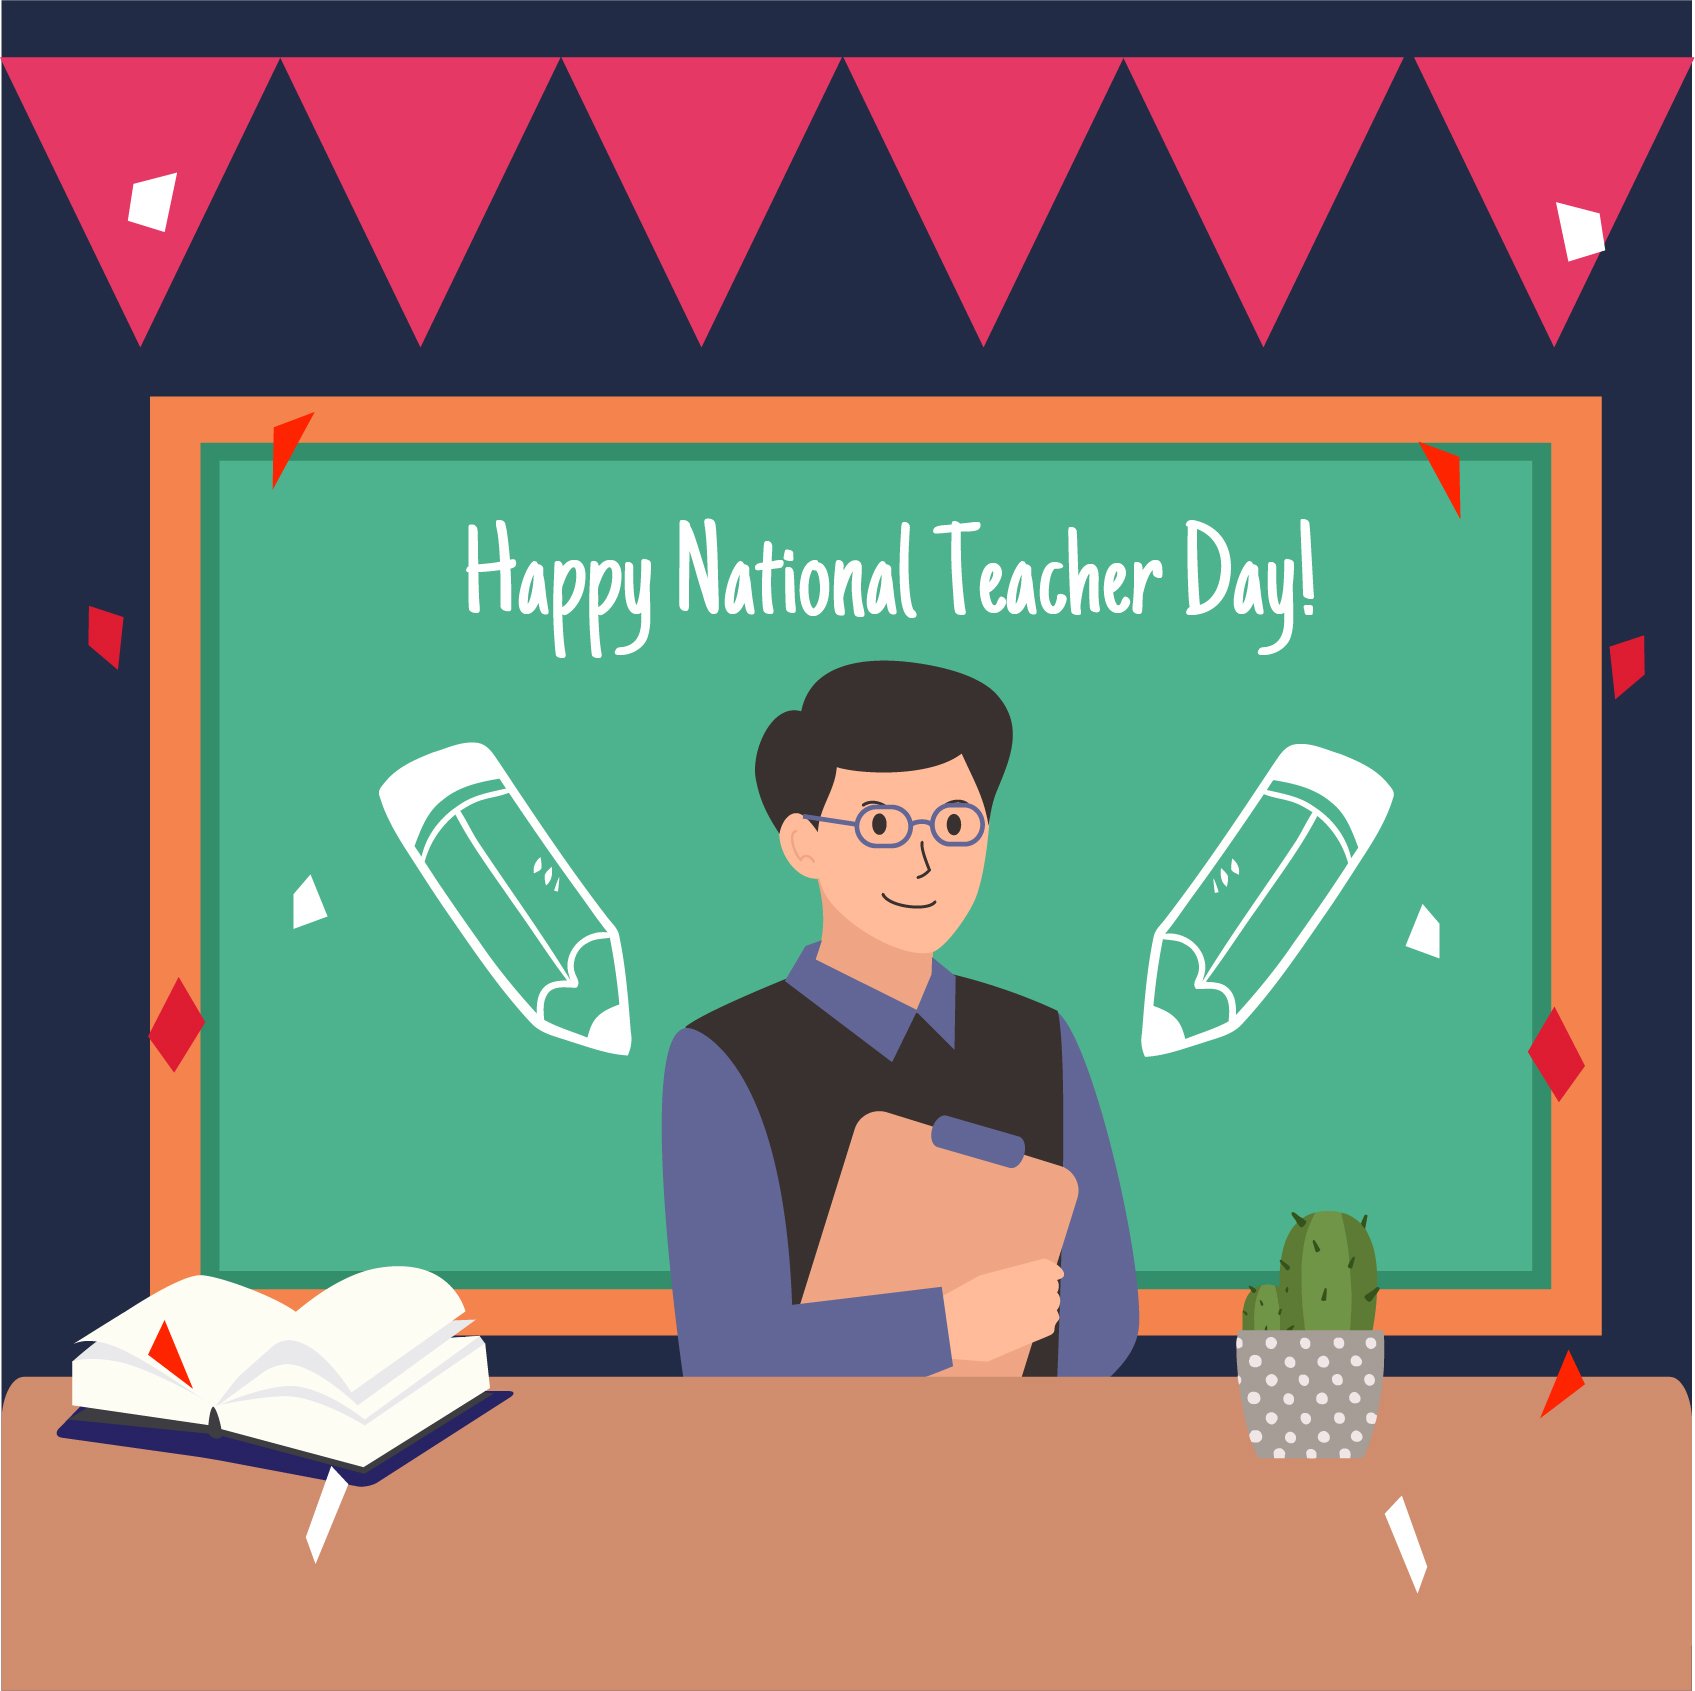 Free National Teacher Day Vector in Illustrator, PSD, EPS, SVG, JPG, PNG